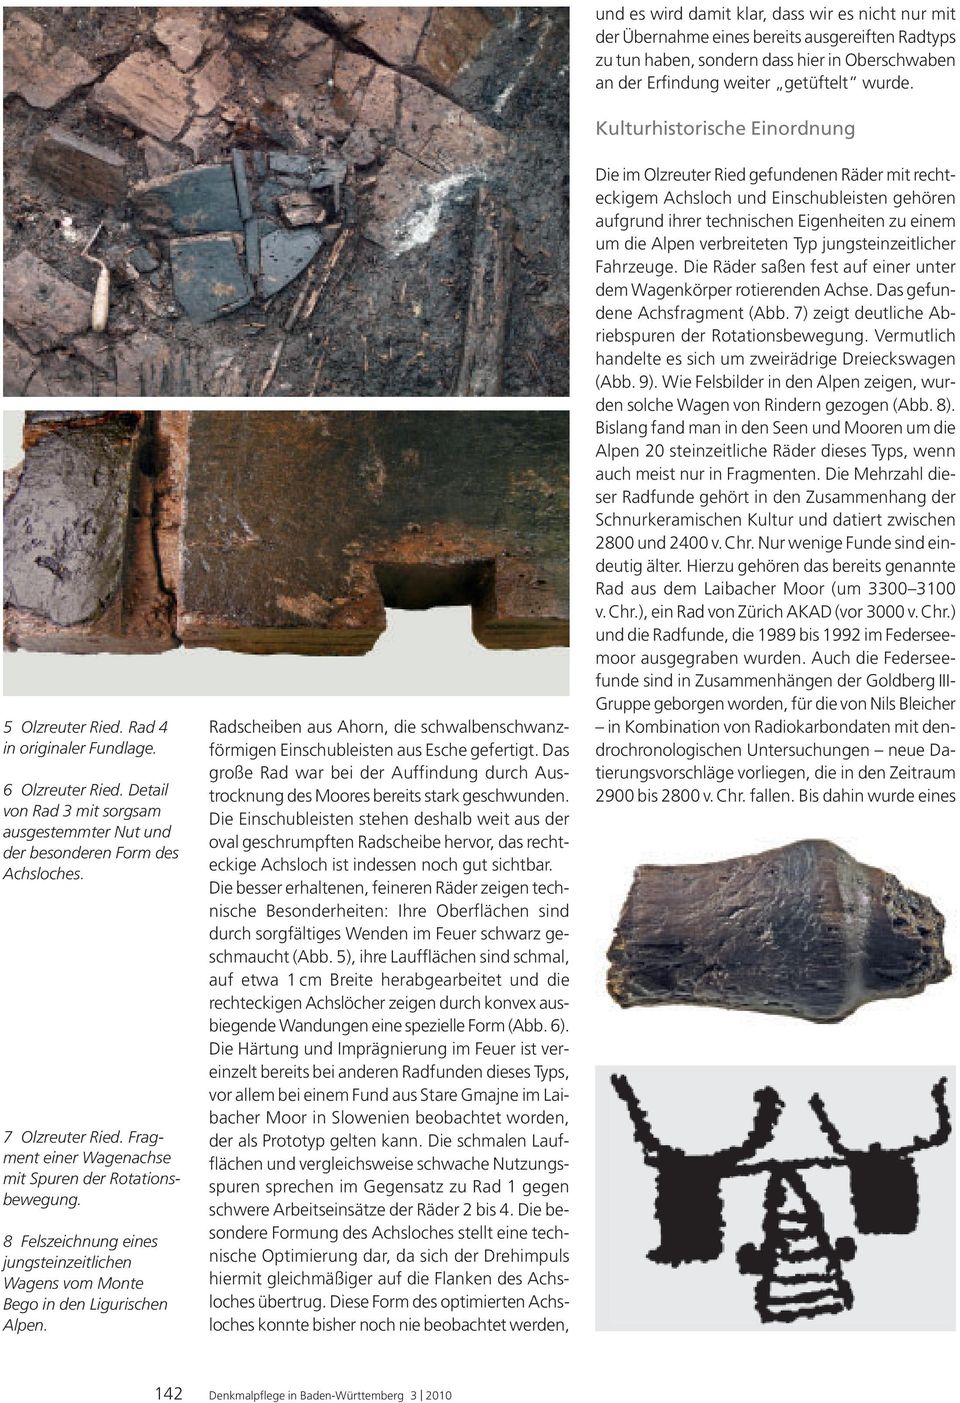 Fragment einer Wagenachse mit Spuren der Rotationsbewegung. 8 Felszeichnung eines jungsteinzeitlichen Wagens vom Monte Bego in den Ligurischen Alpen.